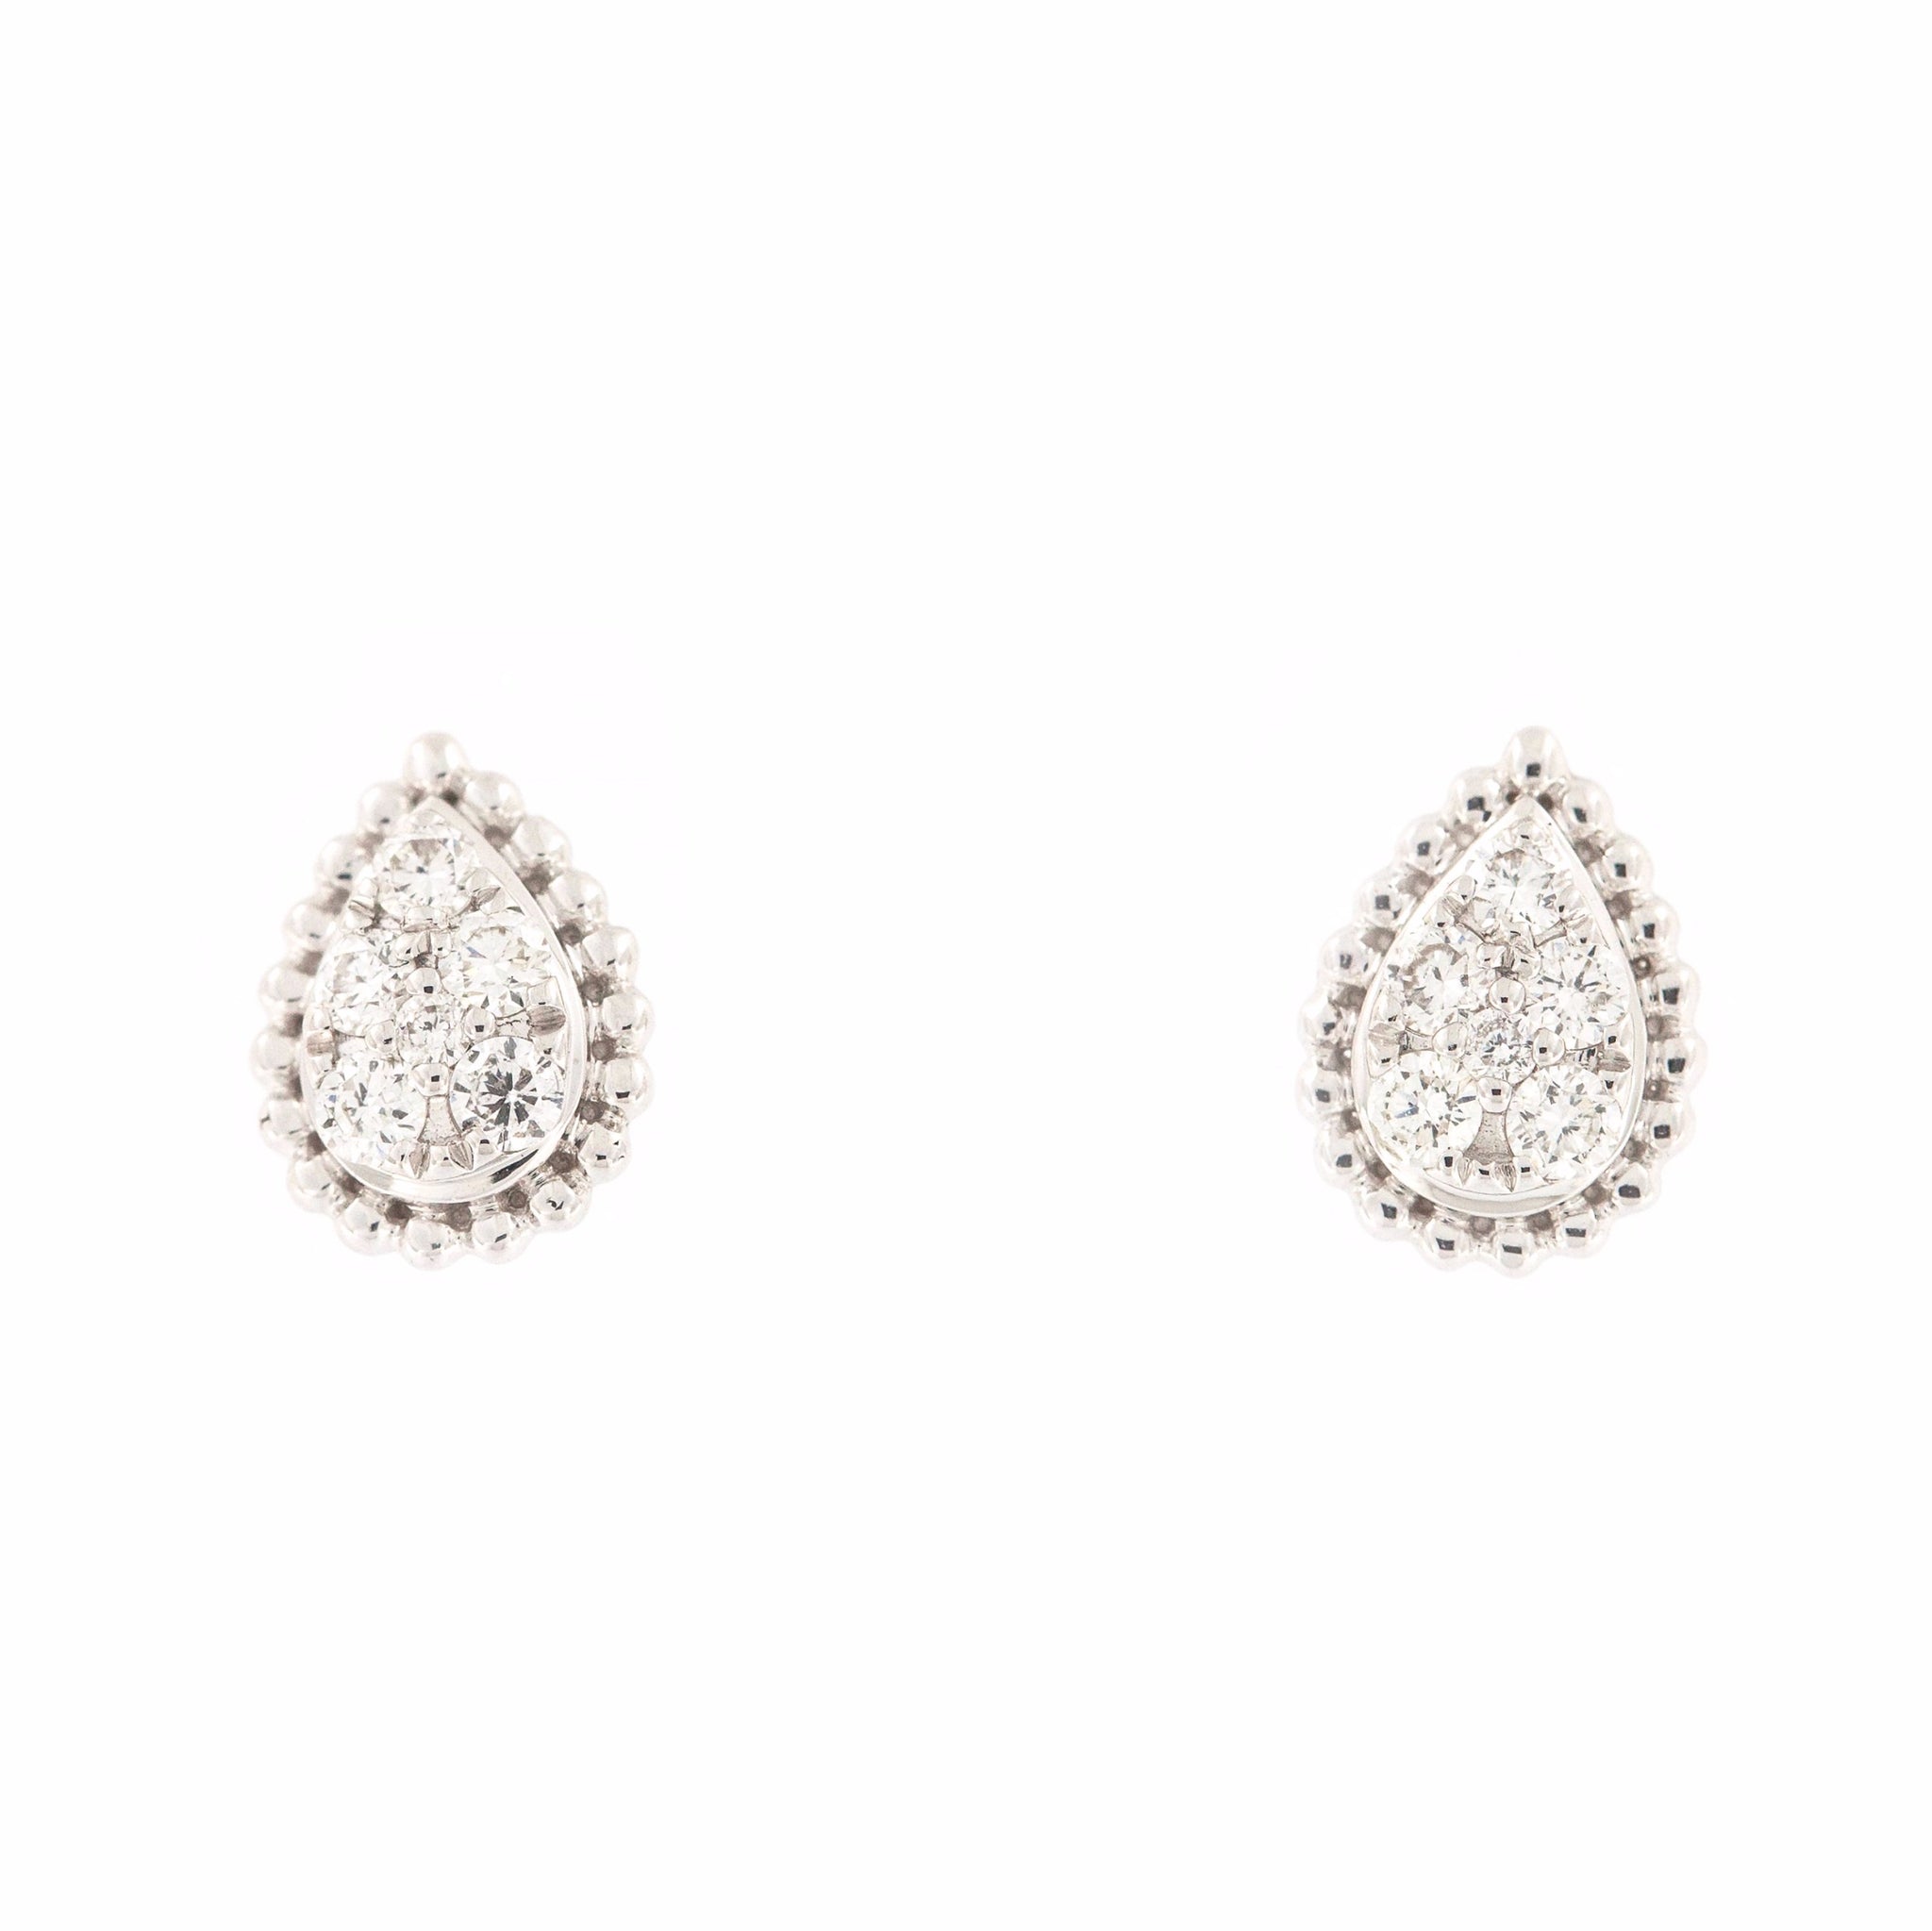 Pear shaped diamond cluster earrings